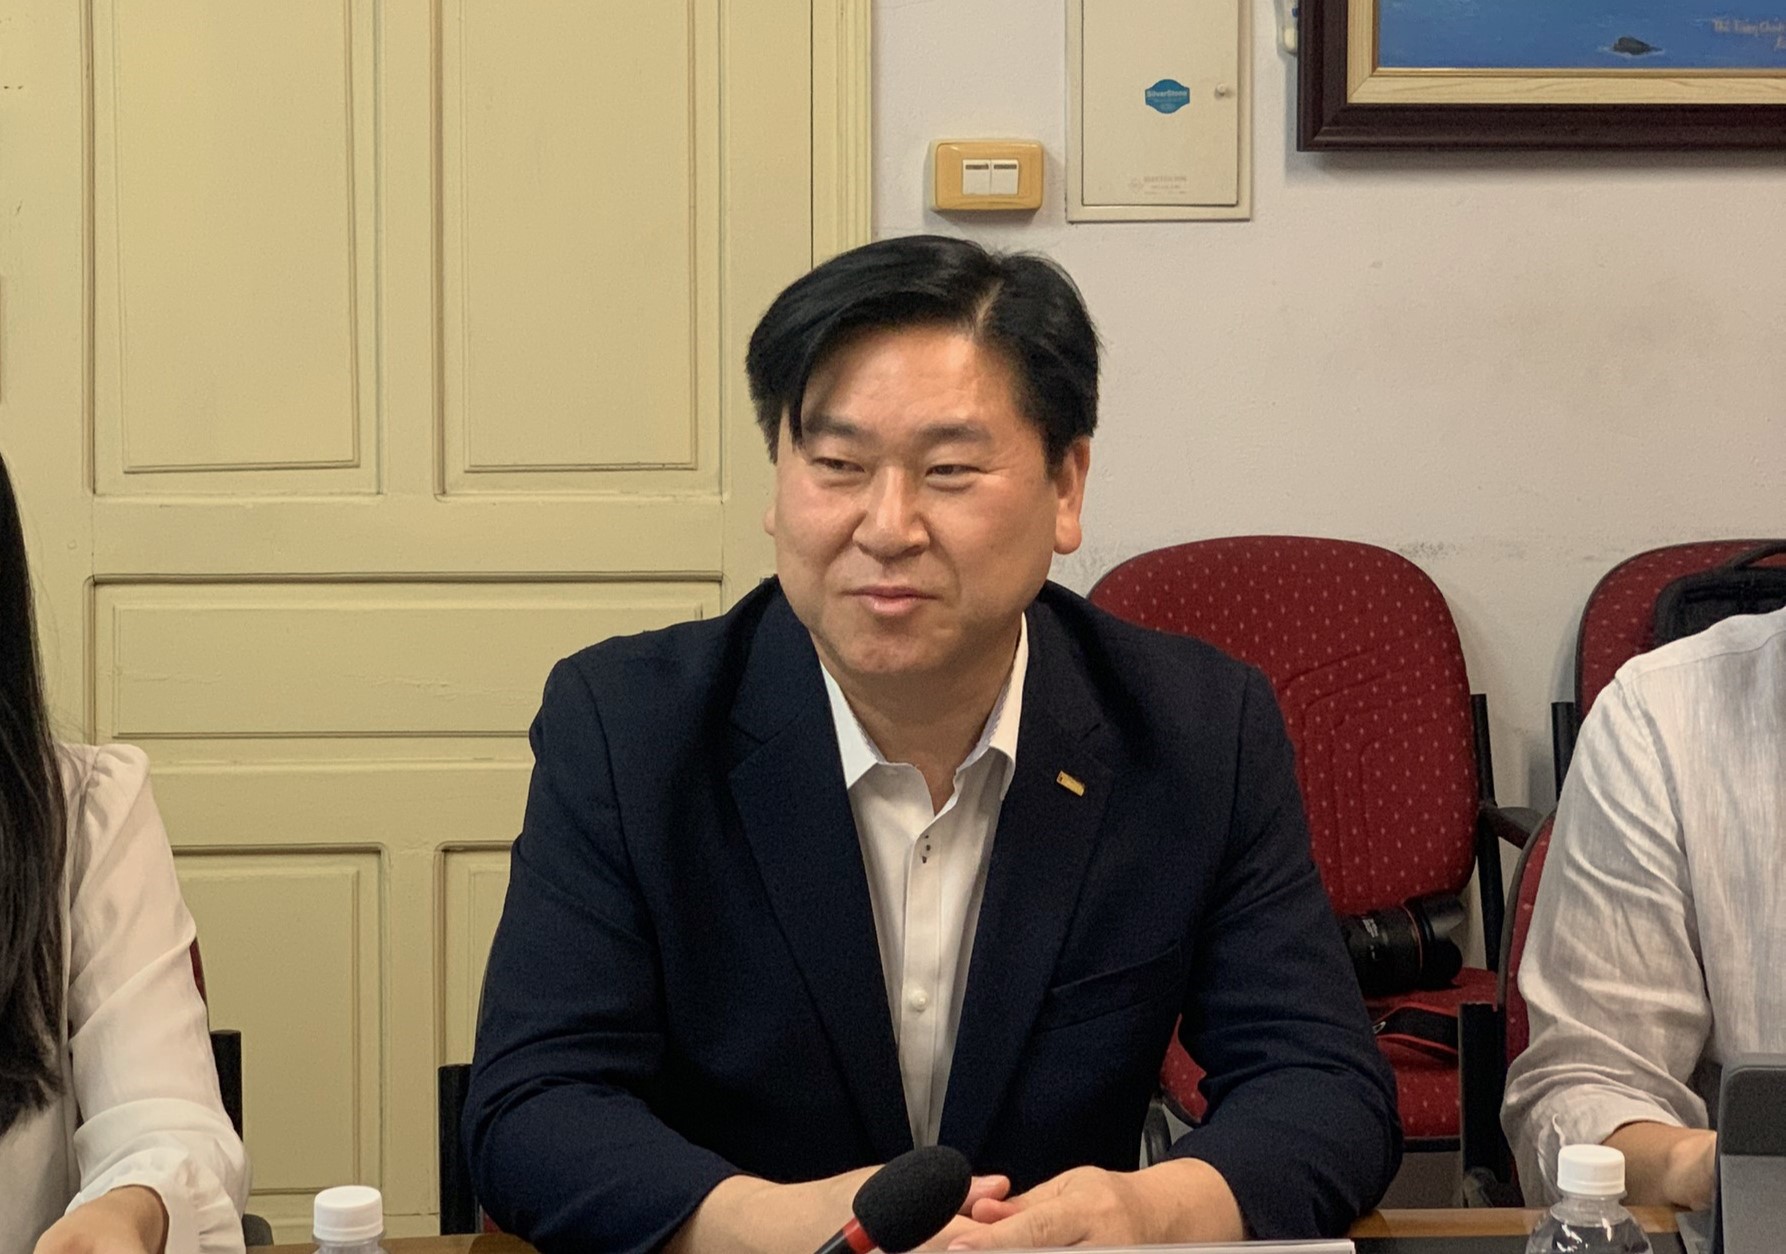 ông Yu Byung Wook - Giám đốc Cơ quan xúc tiến Công nghiệp nghiệp thành phố Siheung